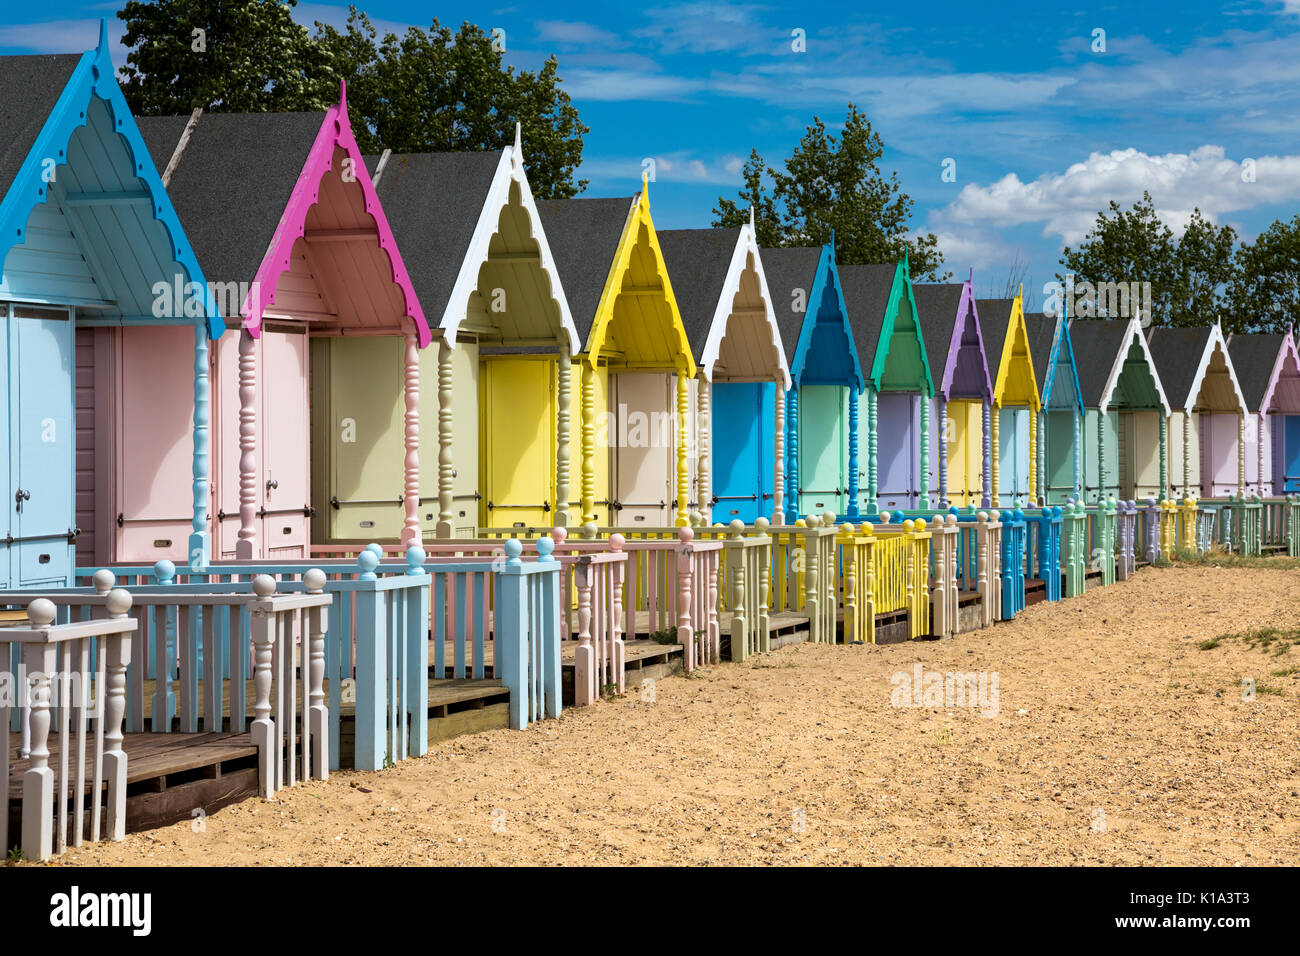 Rangée de cabines colorées sur l'île de Mersea, UK Banque D'Images